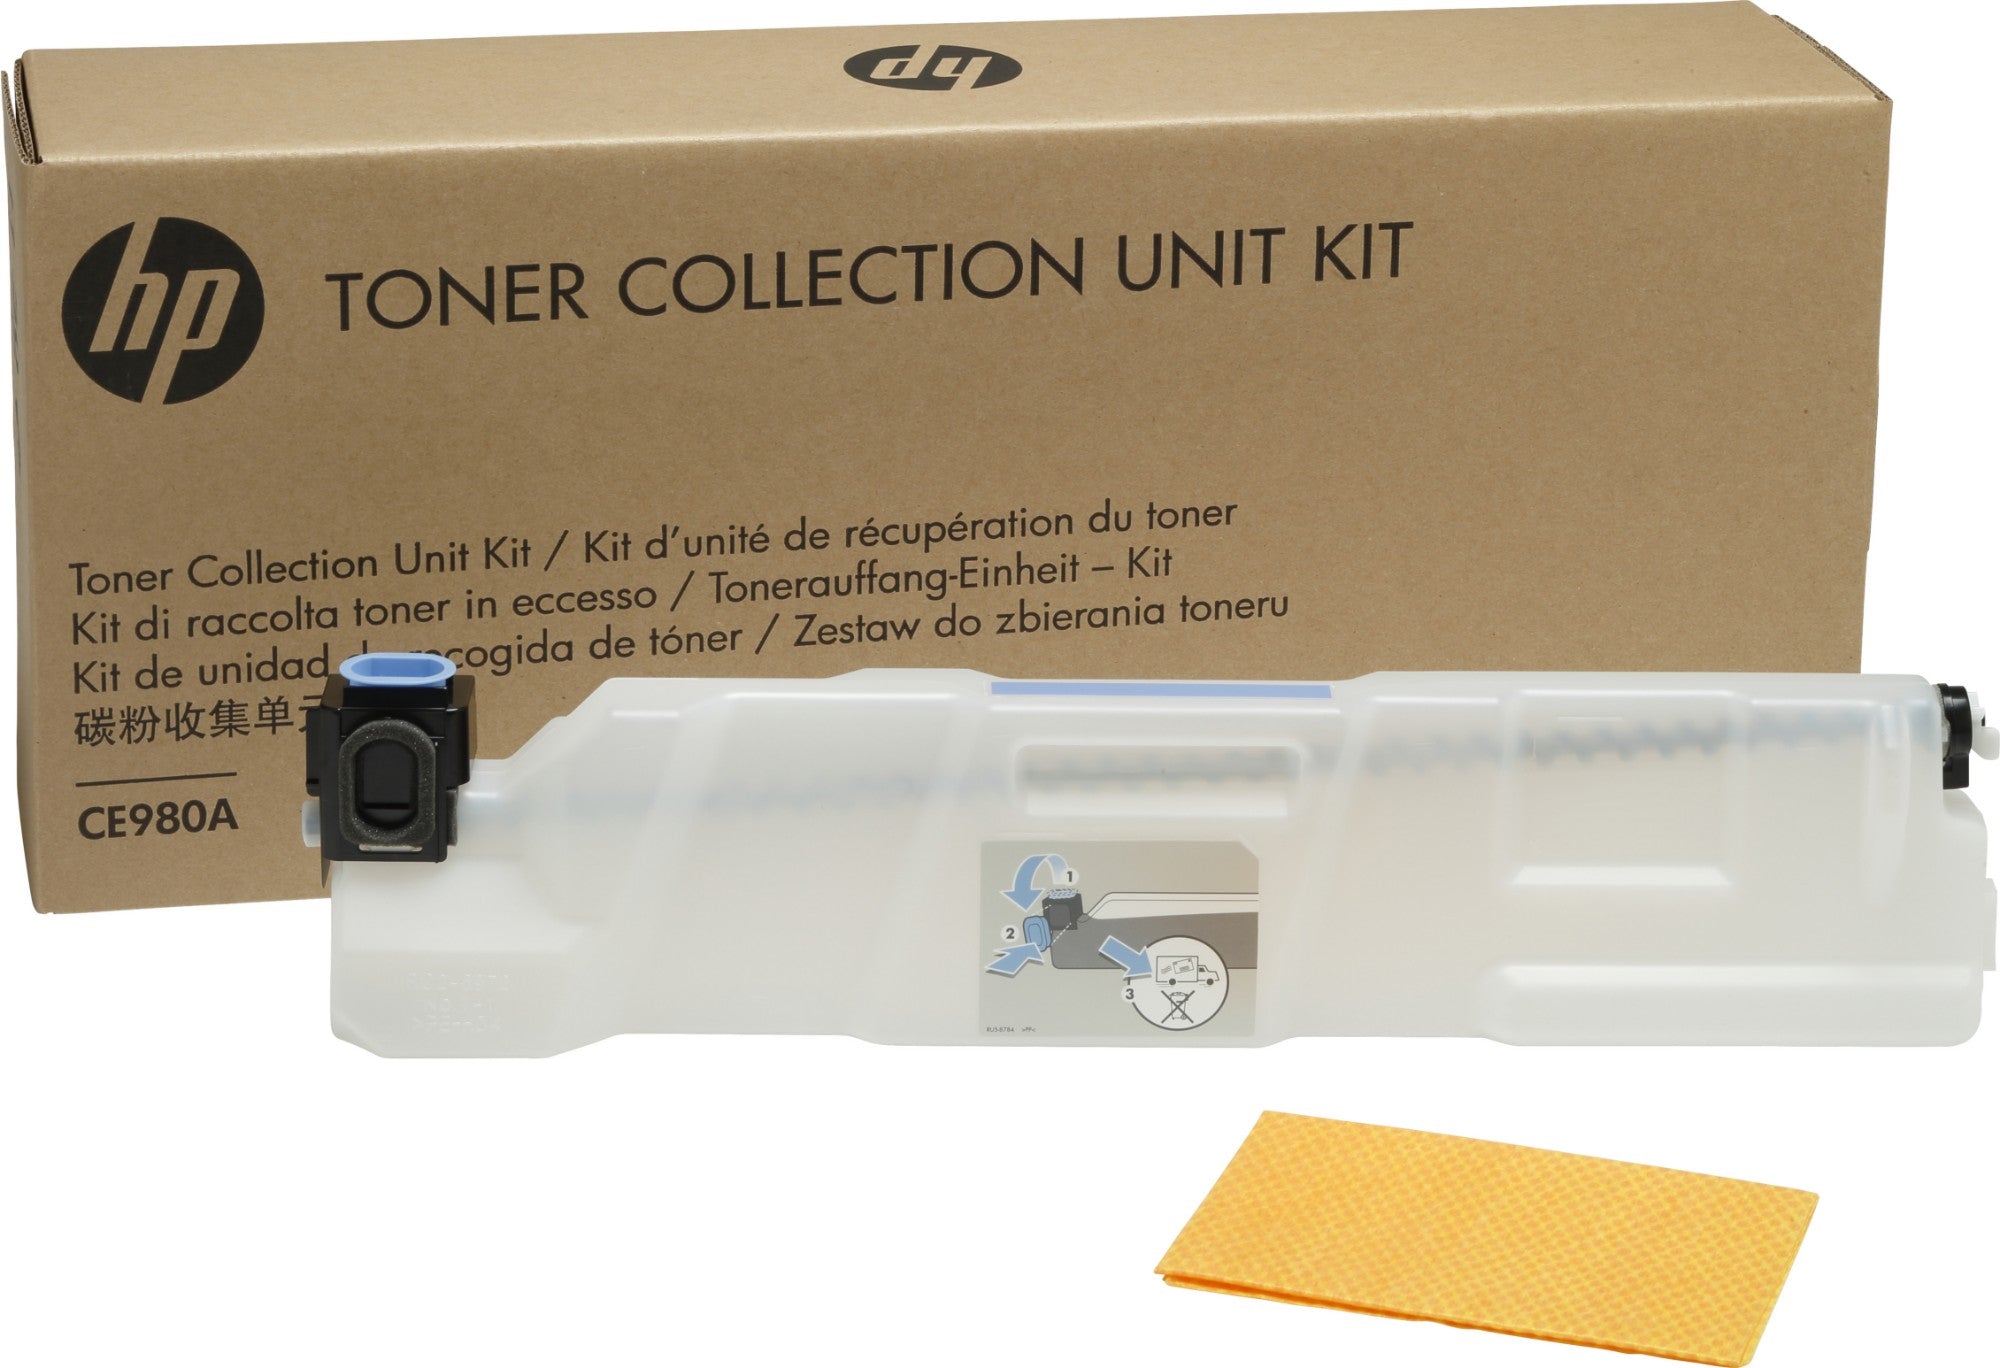 Color LaserJet CE980A Toner Collection Unit